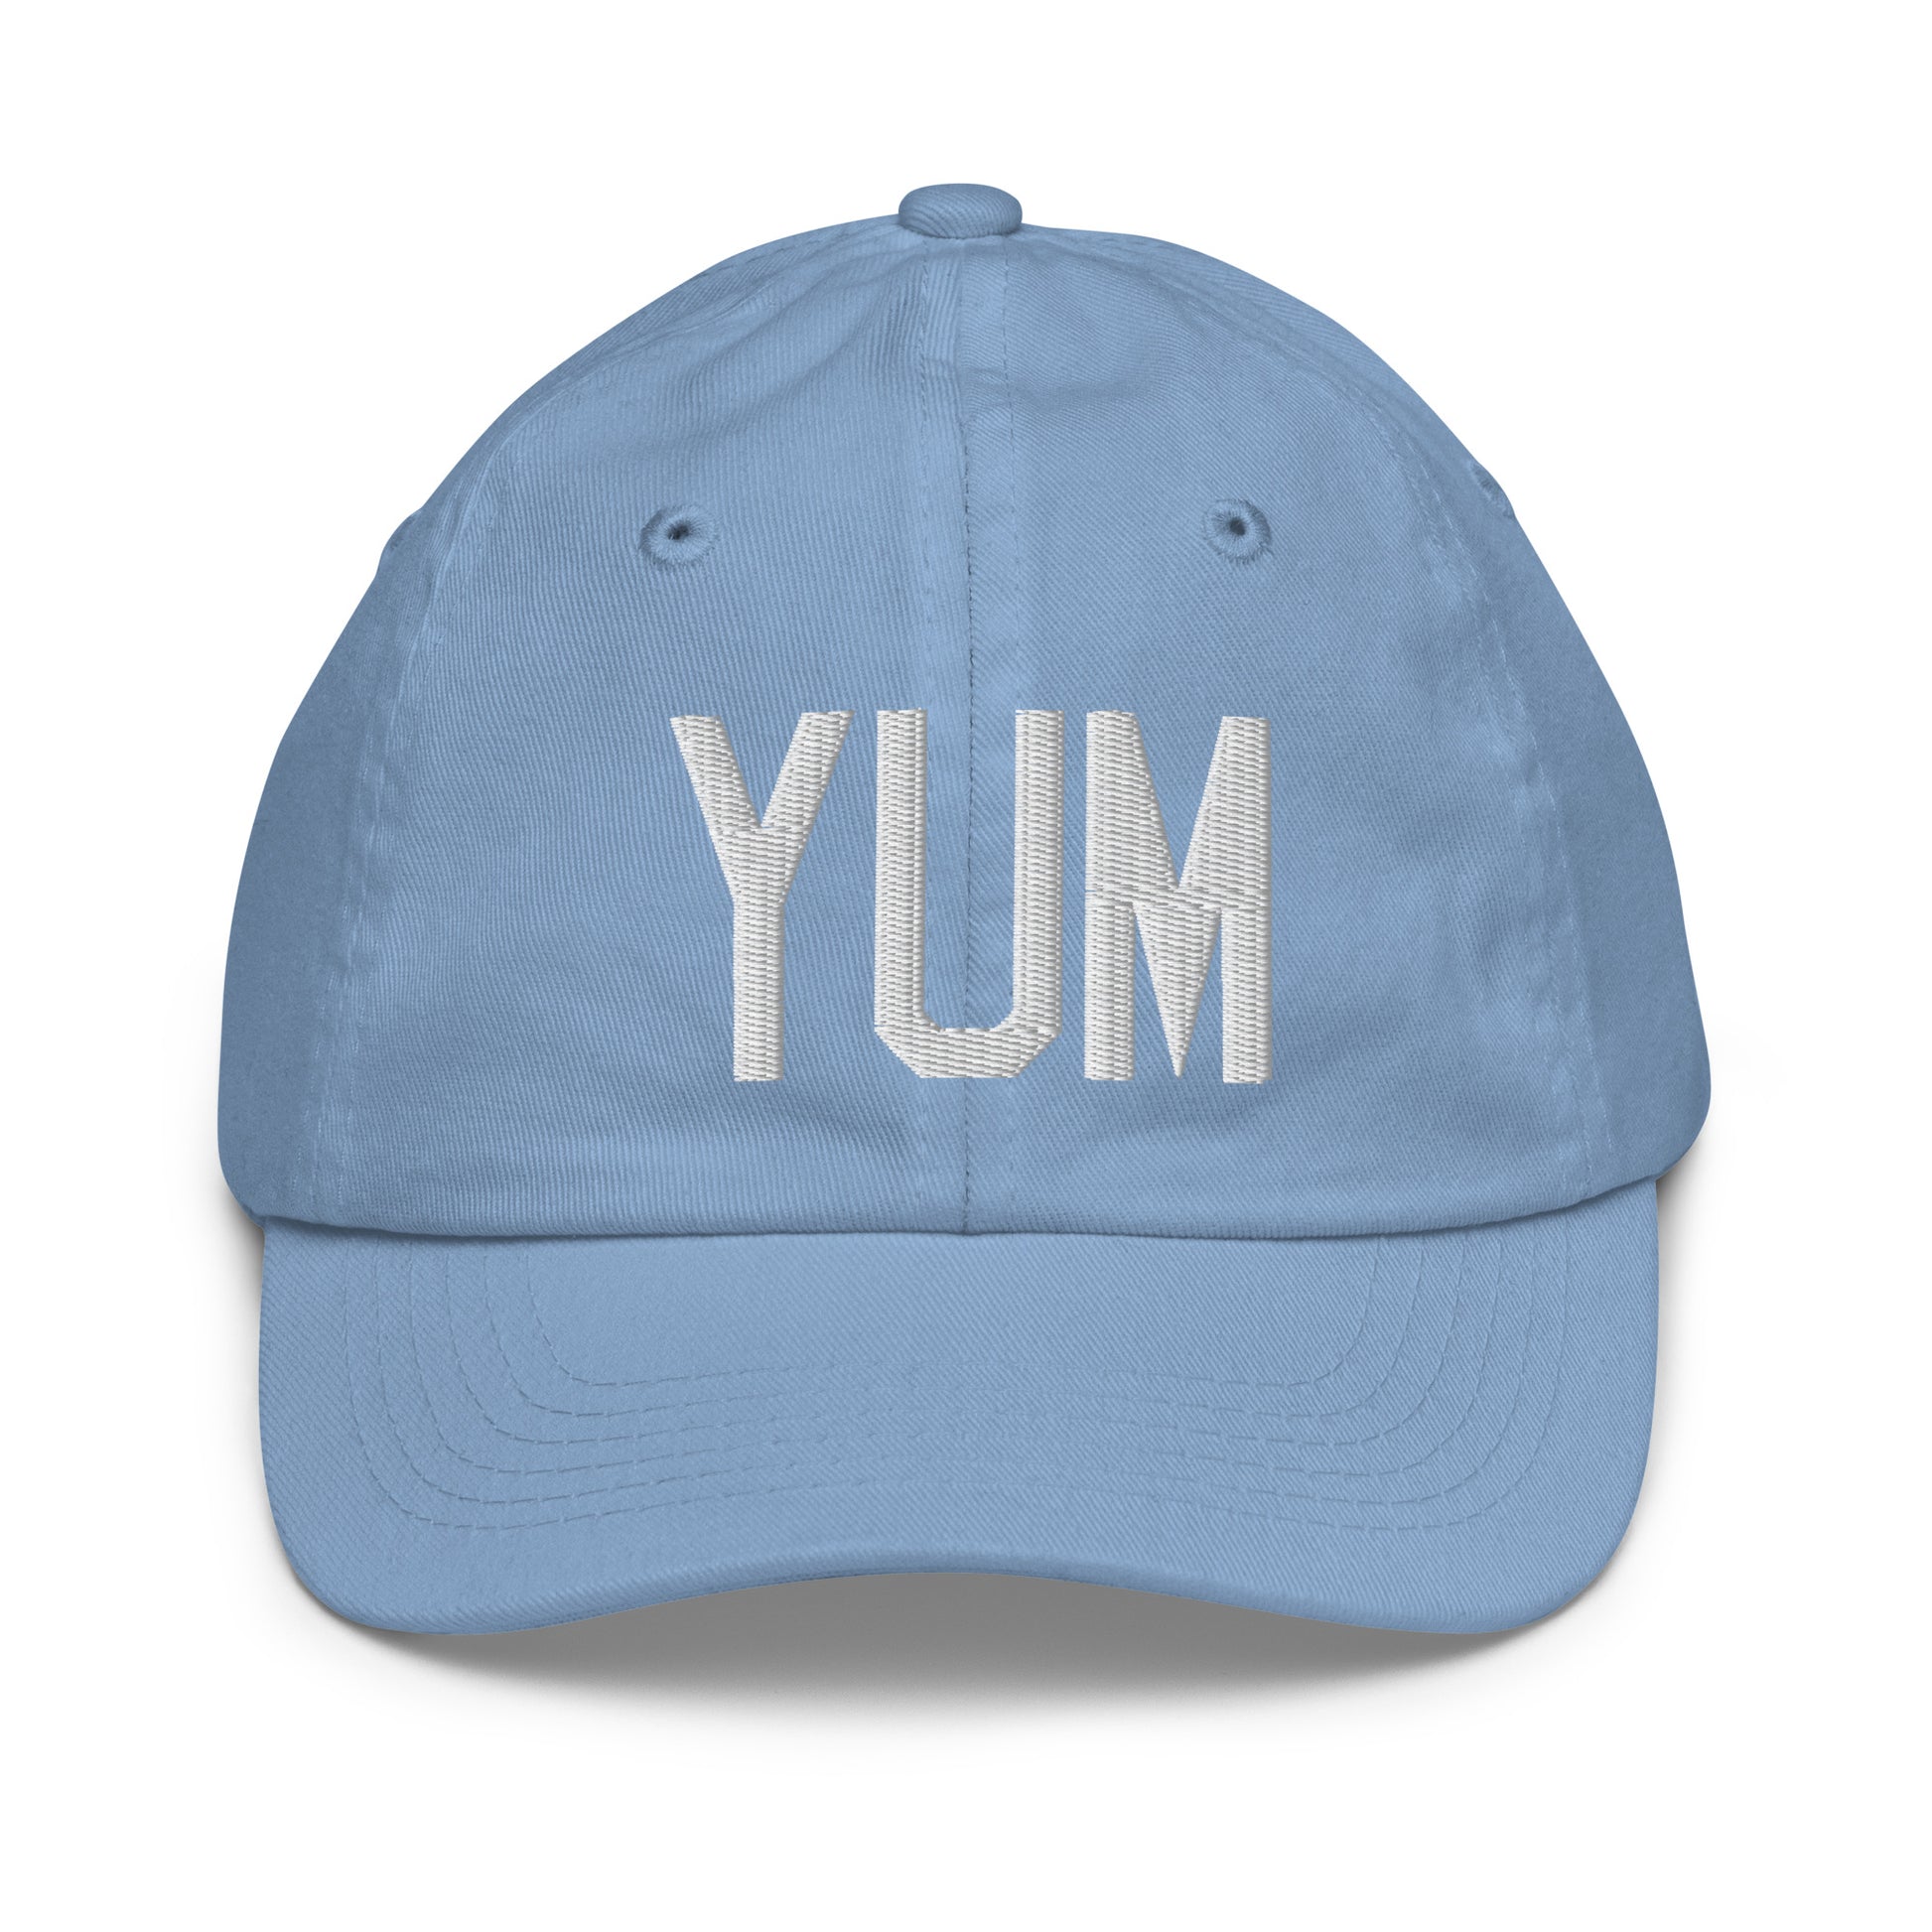 Airport Code Kid's Baseball Cap - White • YUM Yuma • YHM Designs - Image 22